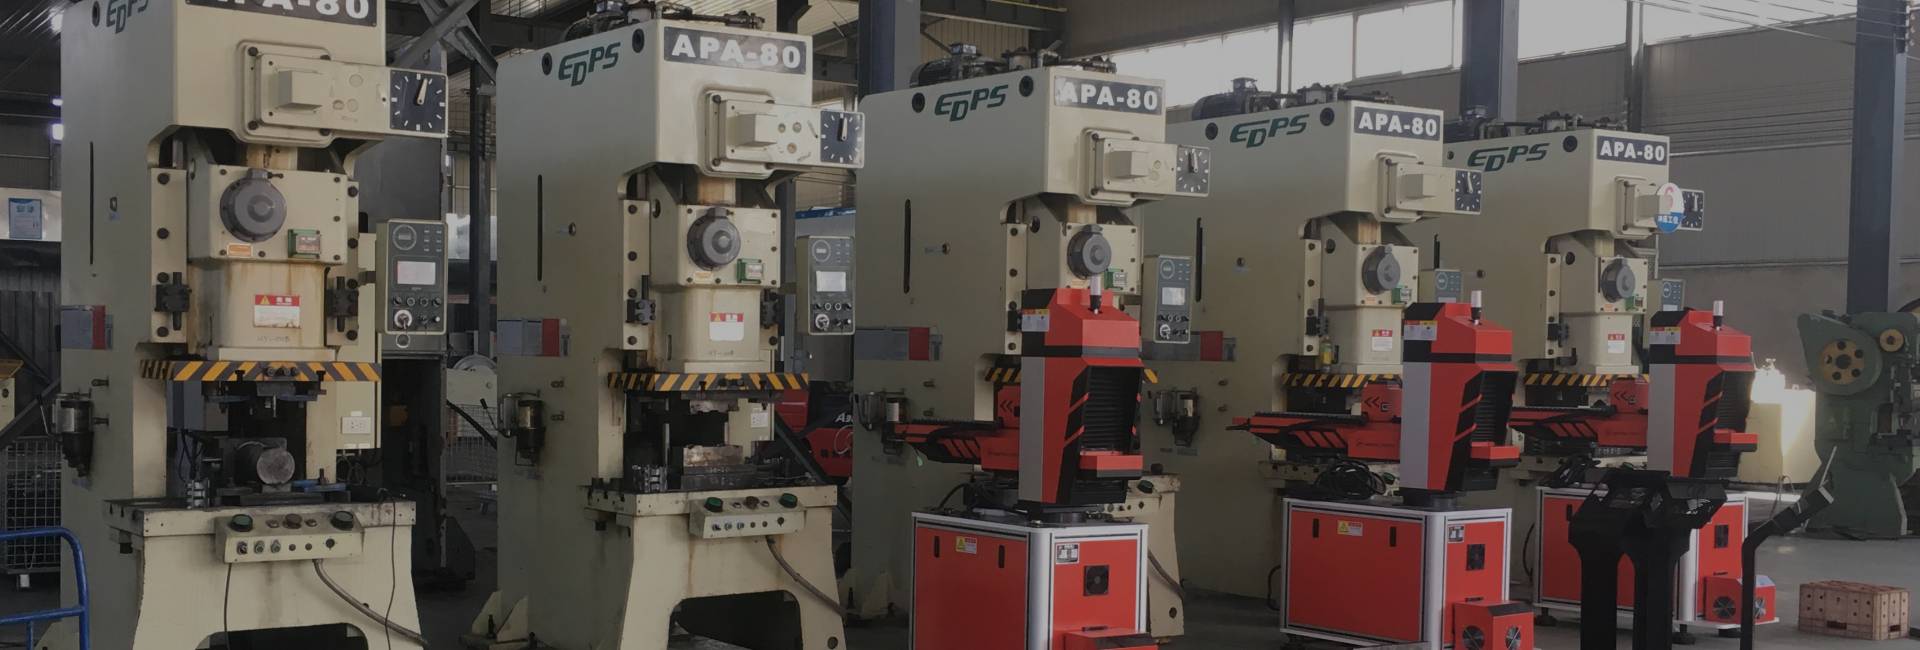 Varias máquinas de formación y brazo mecánico en el taller.